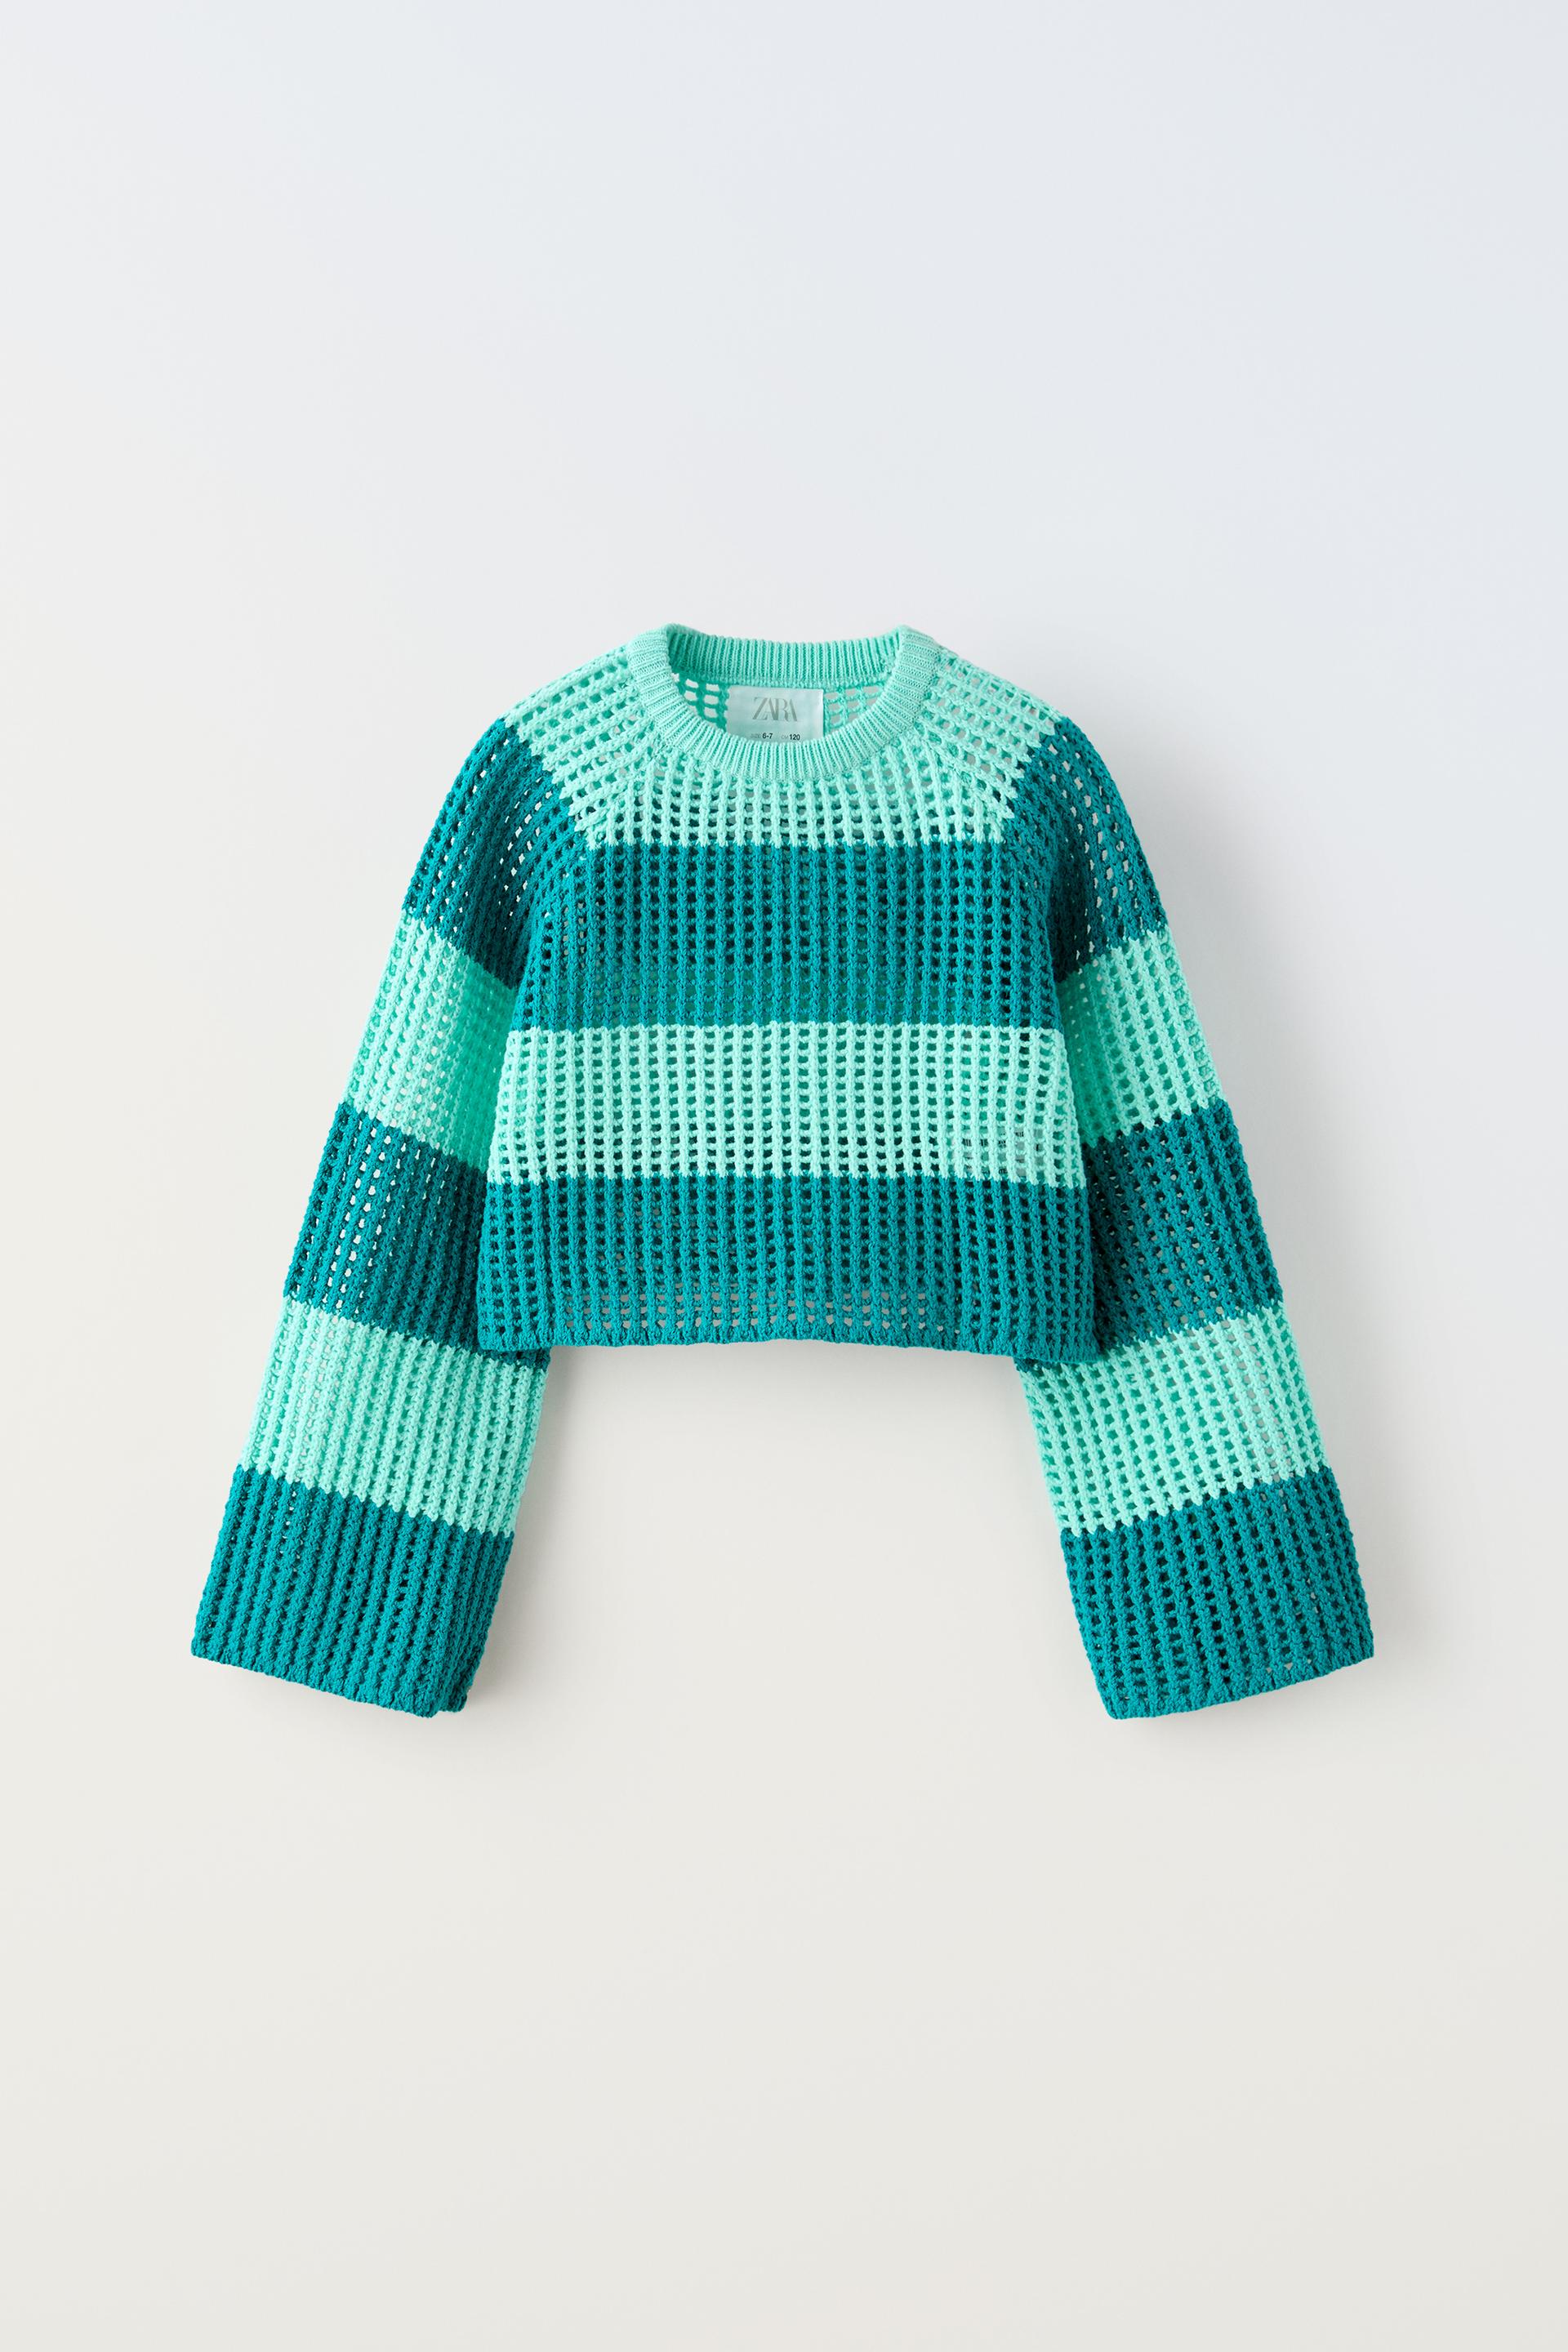 Свитер Zara Striped Knit, бирюзовый поло zara striped knit shirt зеленый